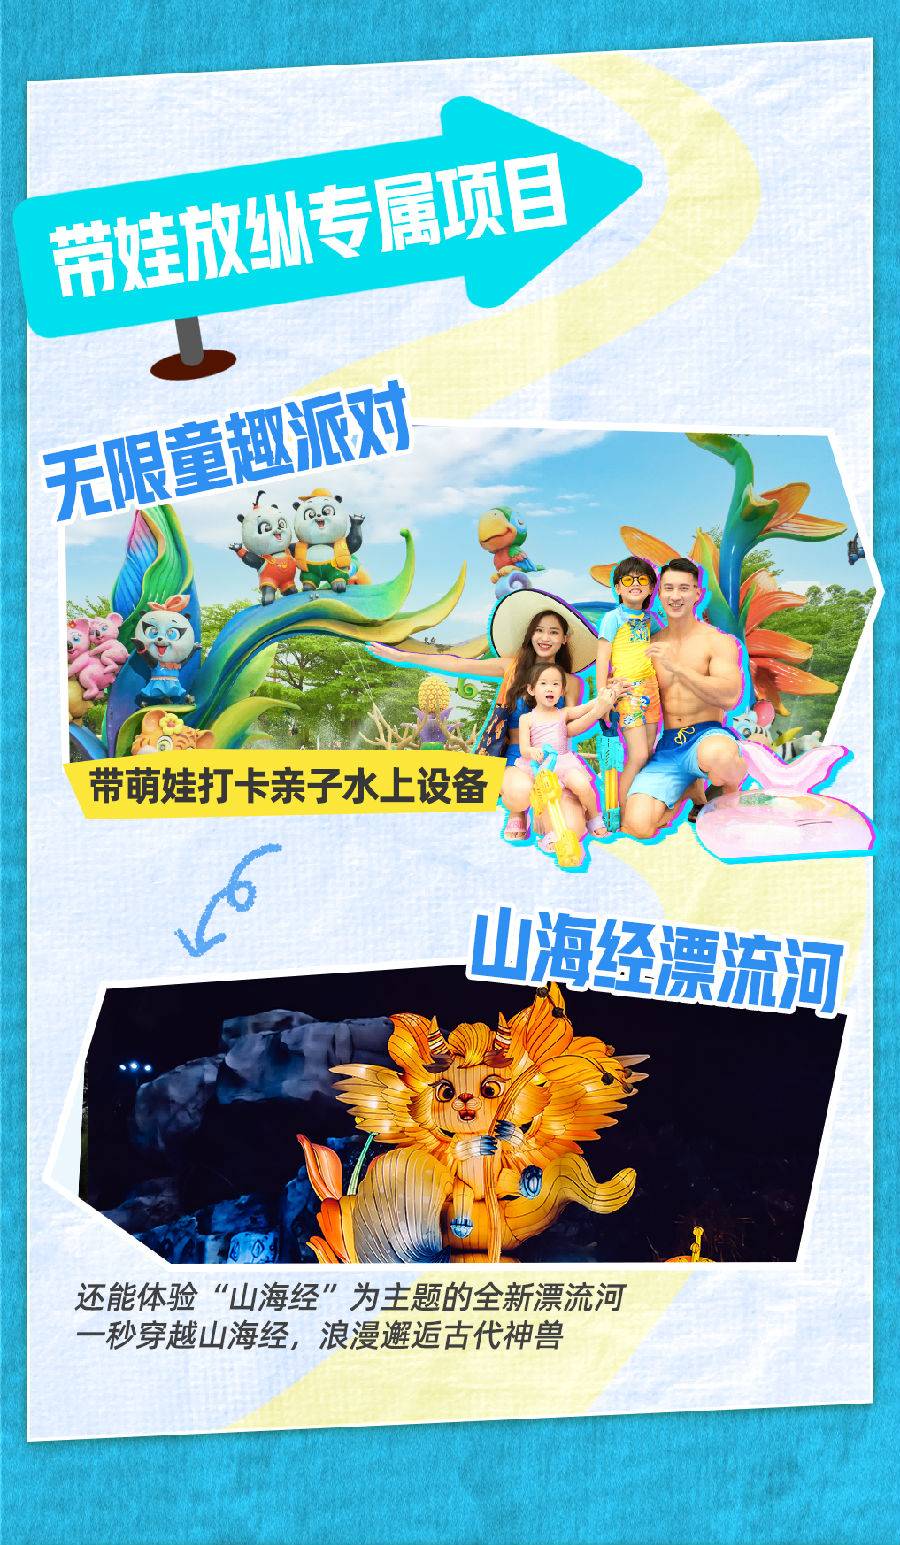 【常规】广州长隆水上乐园标准票（7-8月）